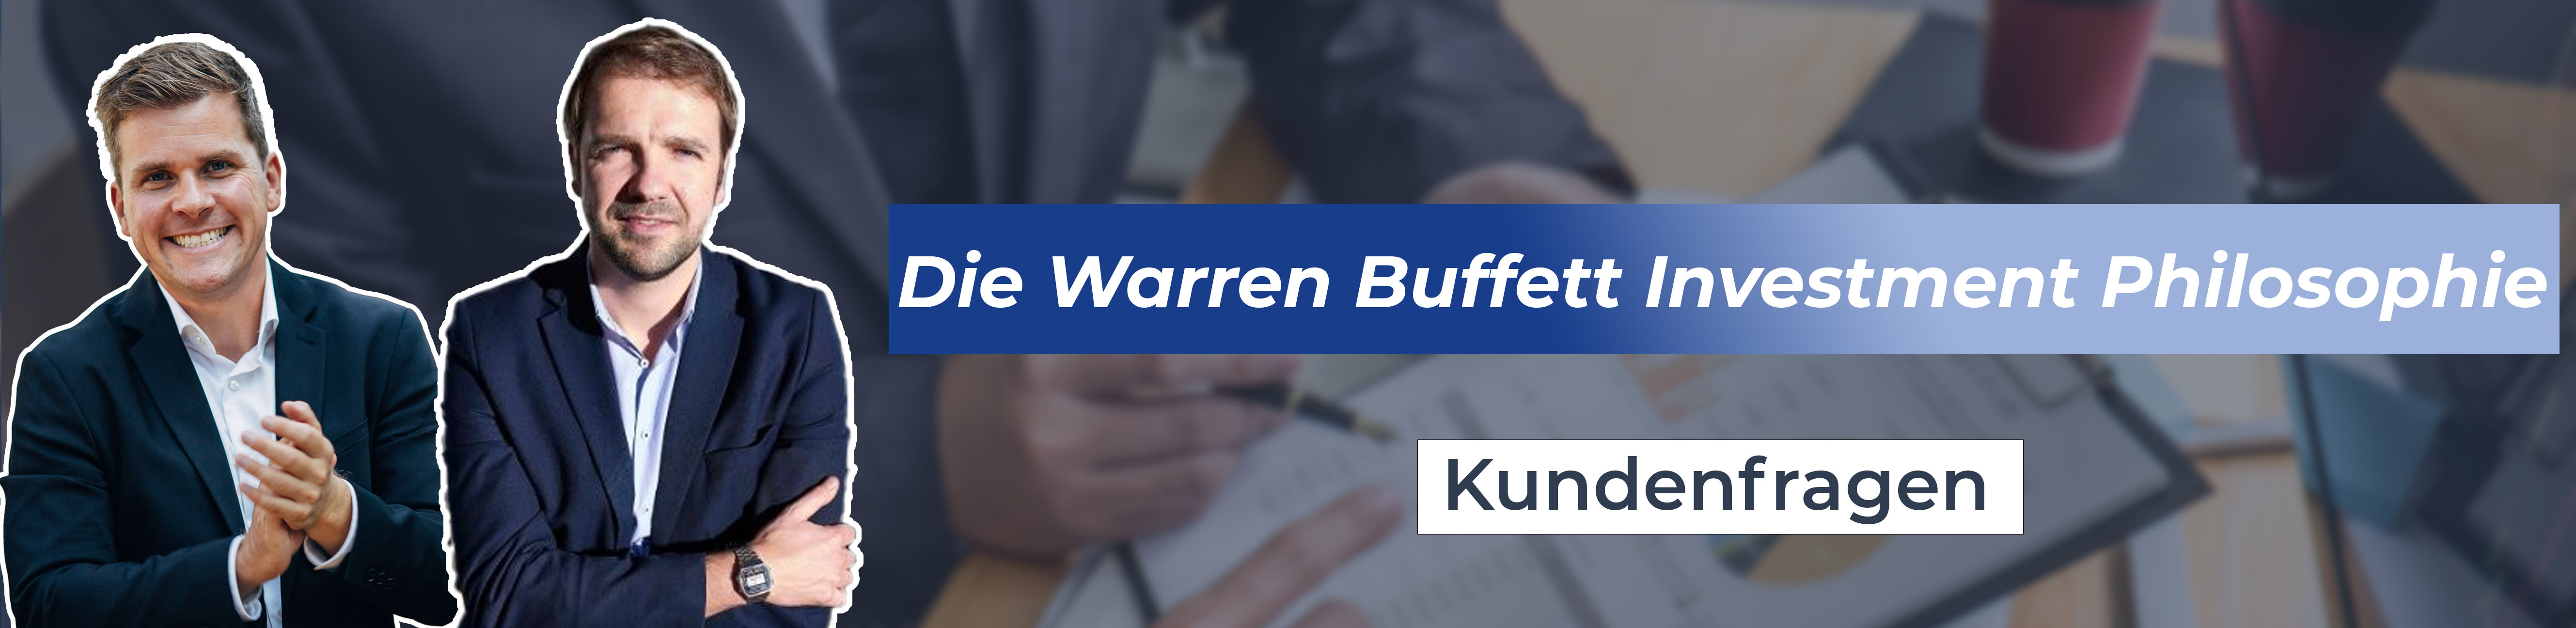 Die Strategie hinter der Investorenlegende Warren Buffett